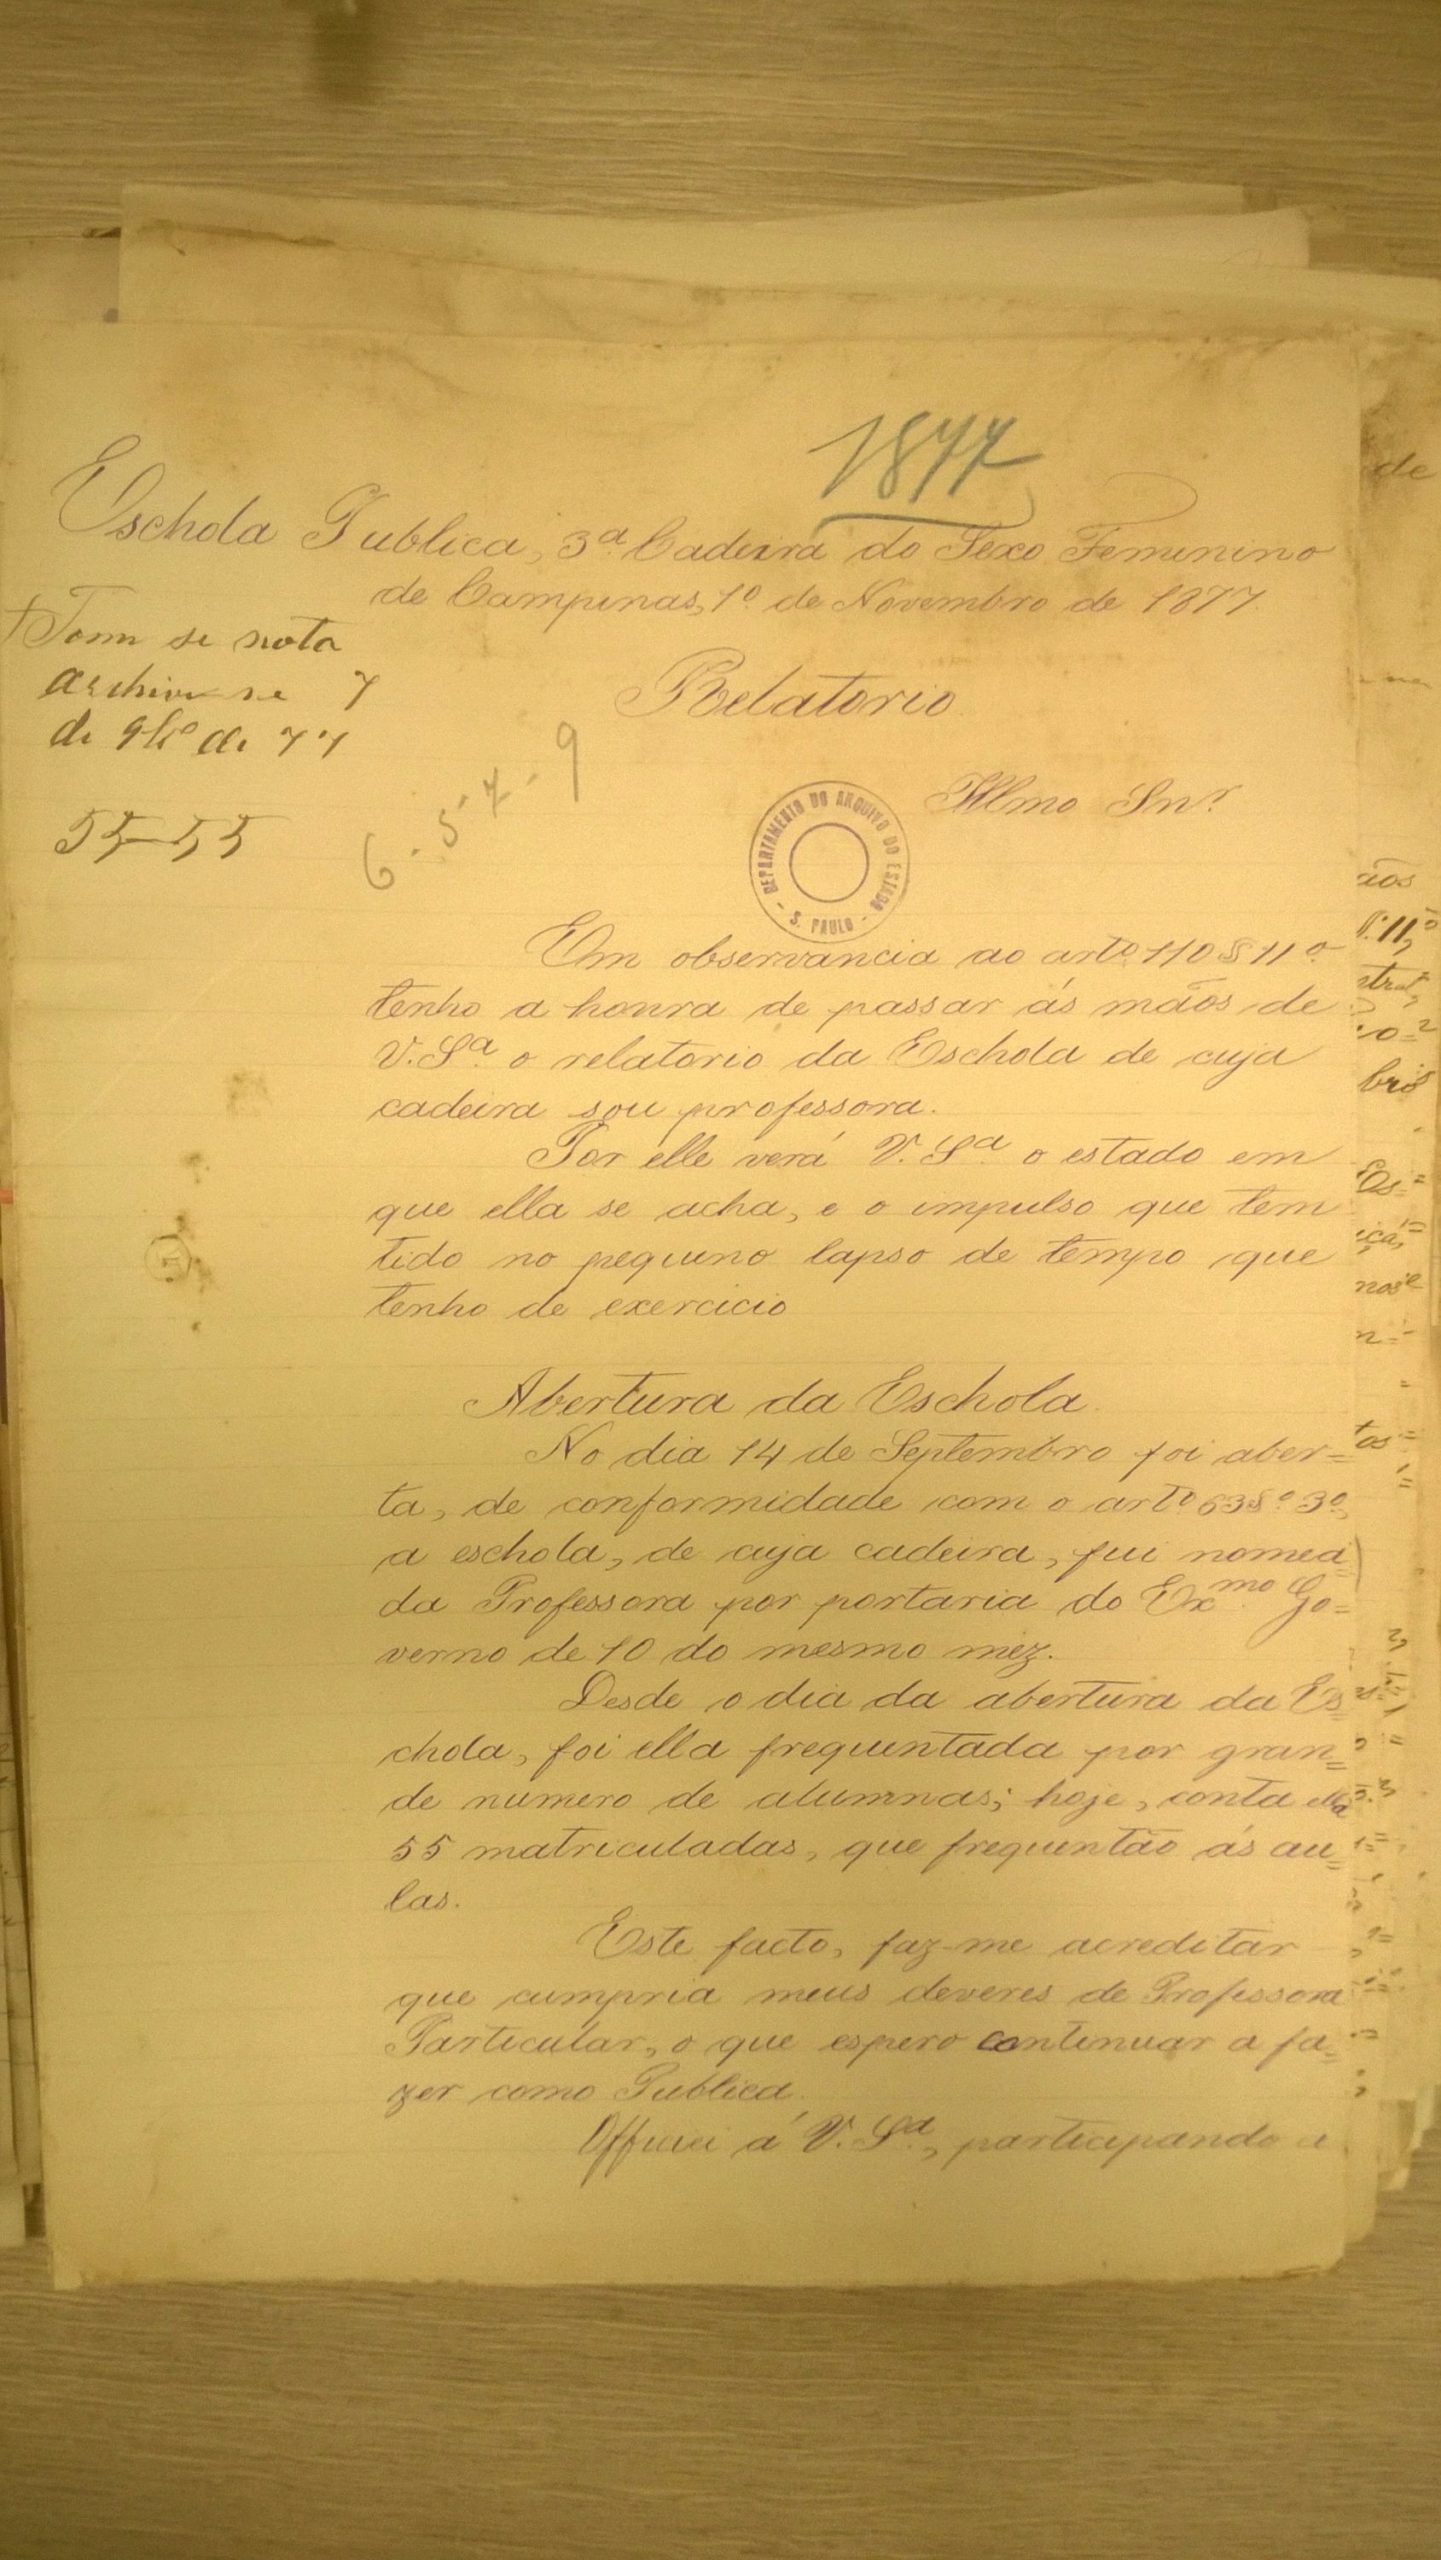 Relatório de Deolinda de Paula Machado Fagundes - Junho/1887. APESP, Império, Série Instrução Pública, Campinas, Ordem 4920.